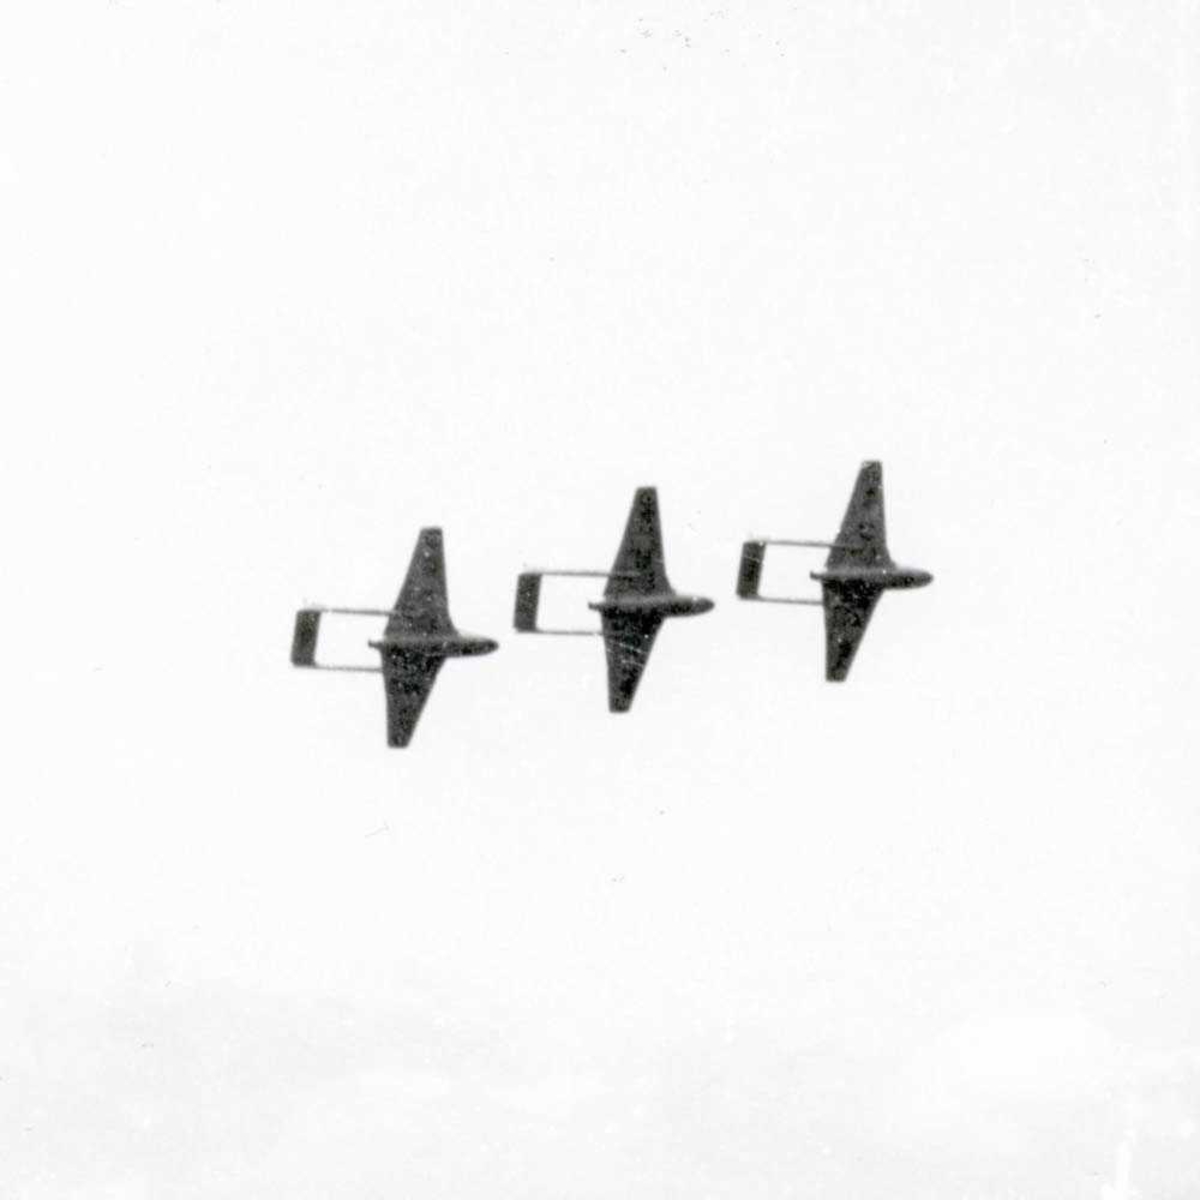 Tre DH 100 Vampire i luften fra det norske Luftforsvaret.